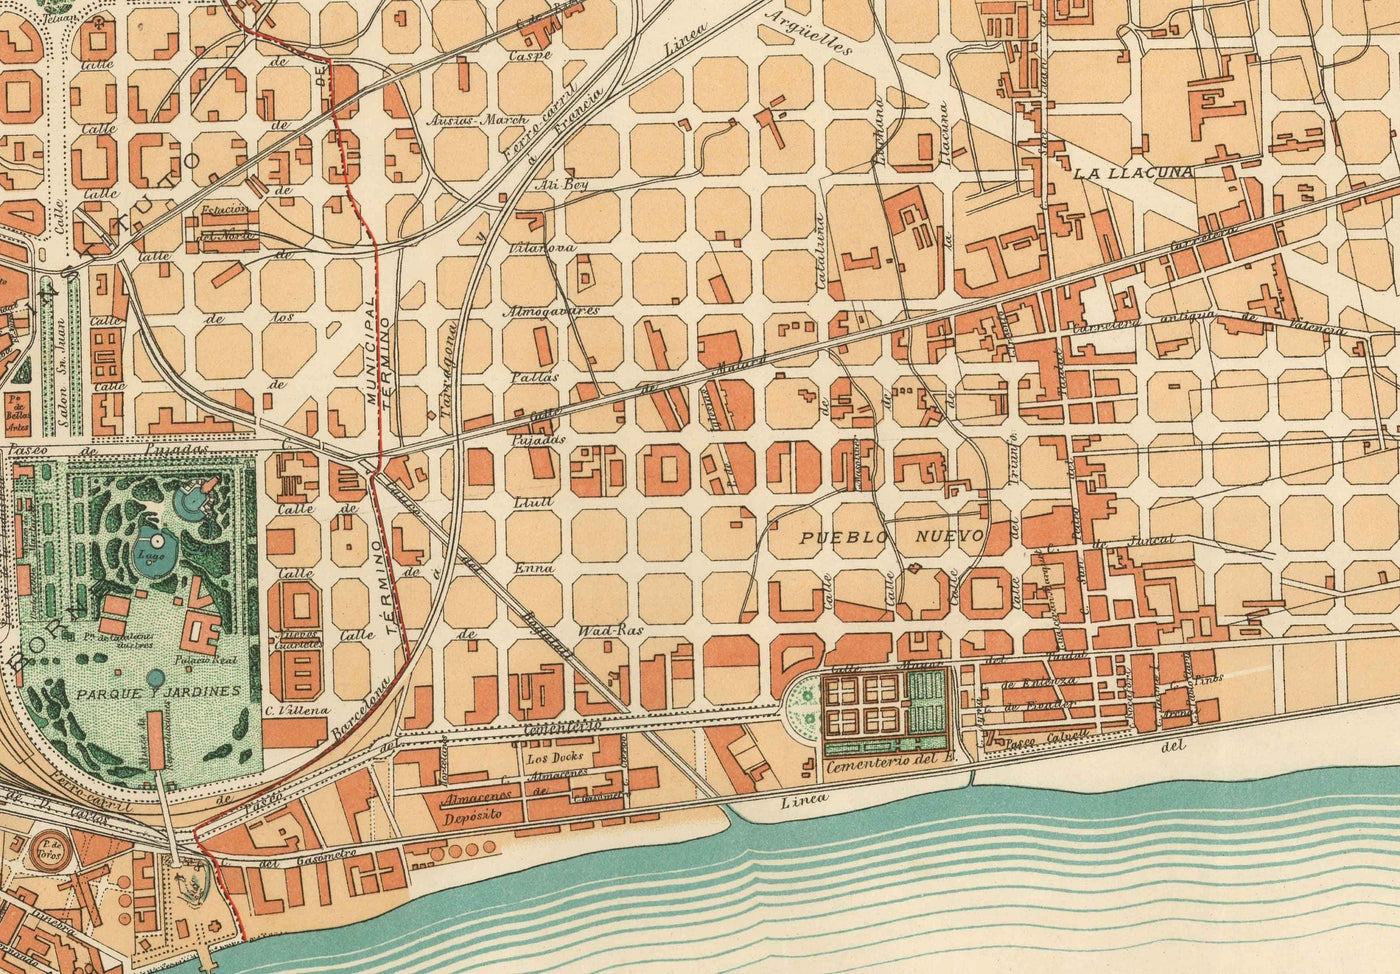 Mapa antiguo de Barcelona, 1891 por DJM Serra - Sagrada Família, Barrio Gótico, Catedrales, Parques, Las Ramblas, Calles